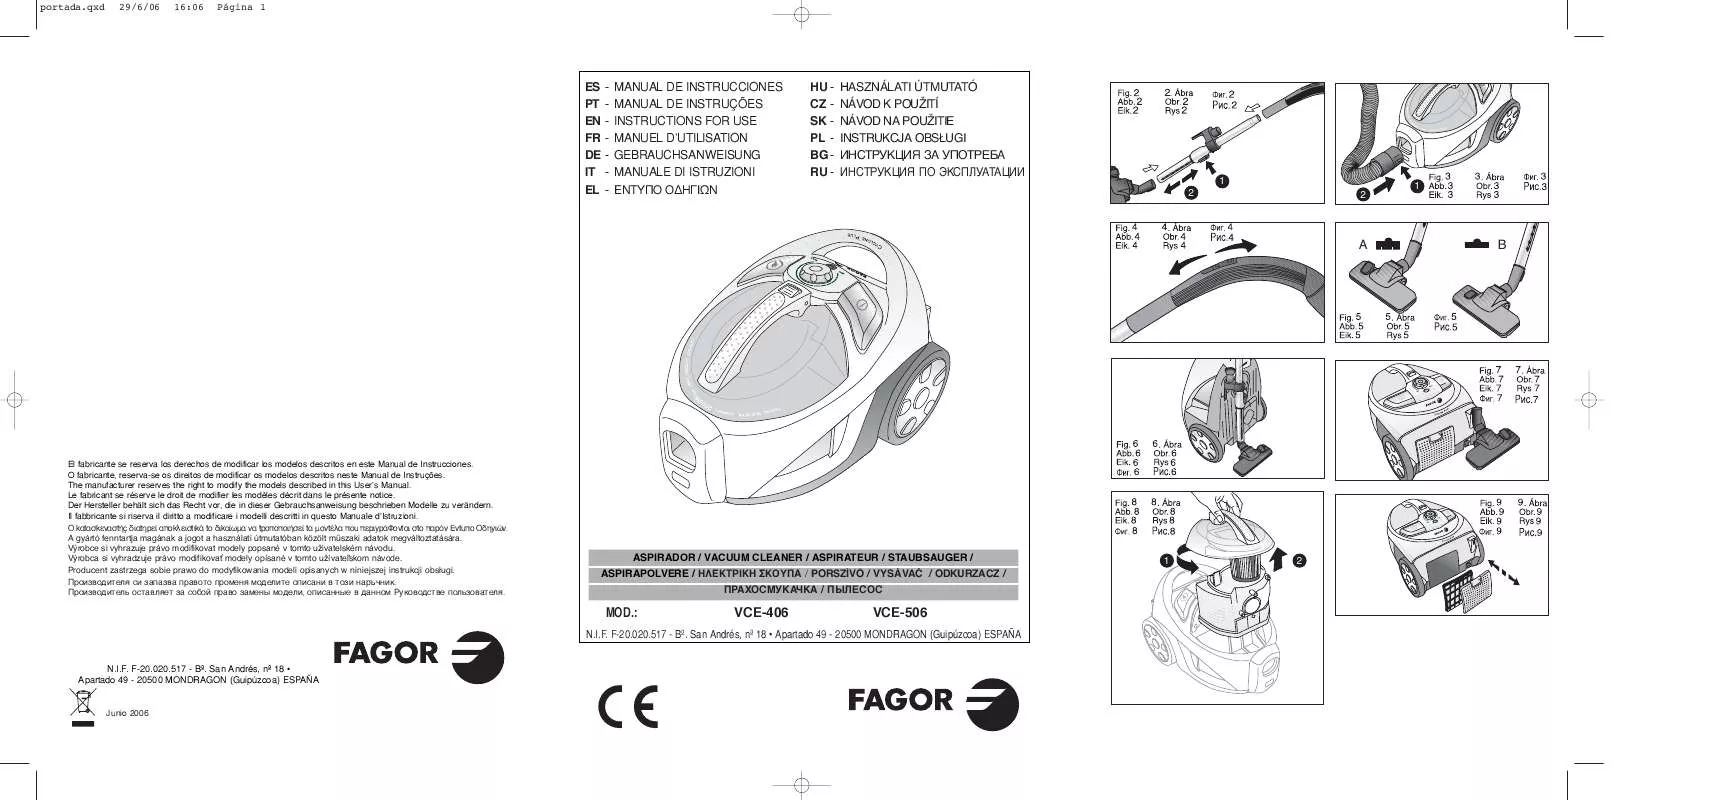 Mode d'emploi FAGOR VCE-406